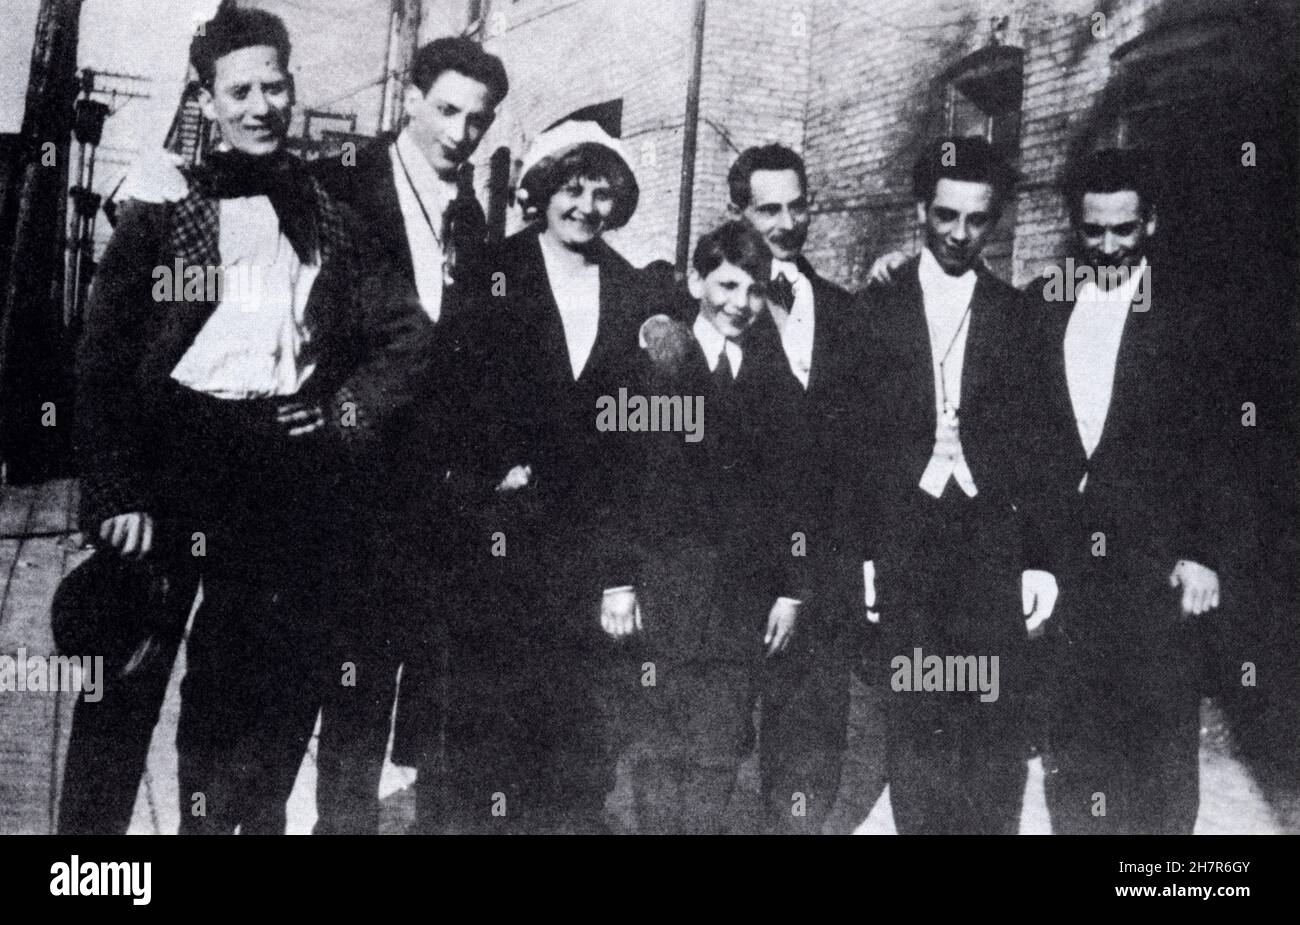 Una rara foto dell'intera famiglia Marx circa 1915. Da sinistra a destra: Groucho, Gummo, Minnie, Zeppo, Sam (Frenchie), Chico, Harpo. Foto Stock